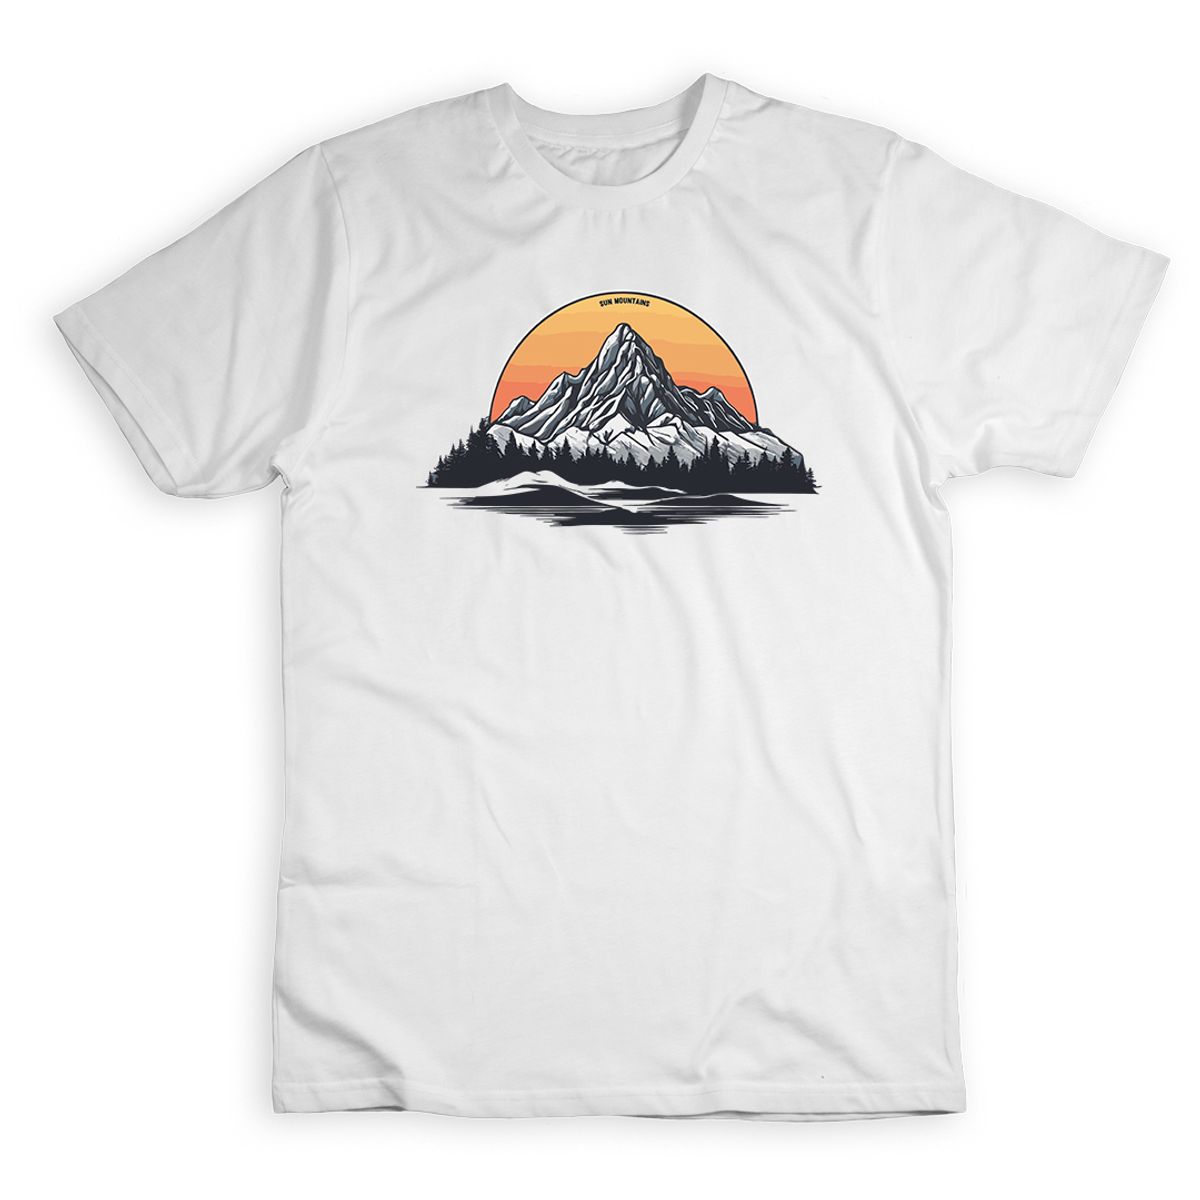 Nome do produto: Sun Mountains